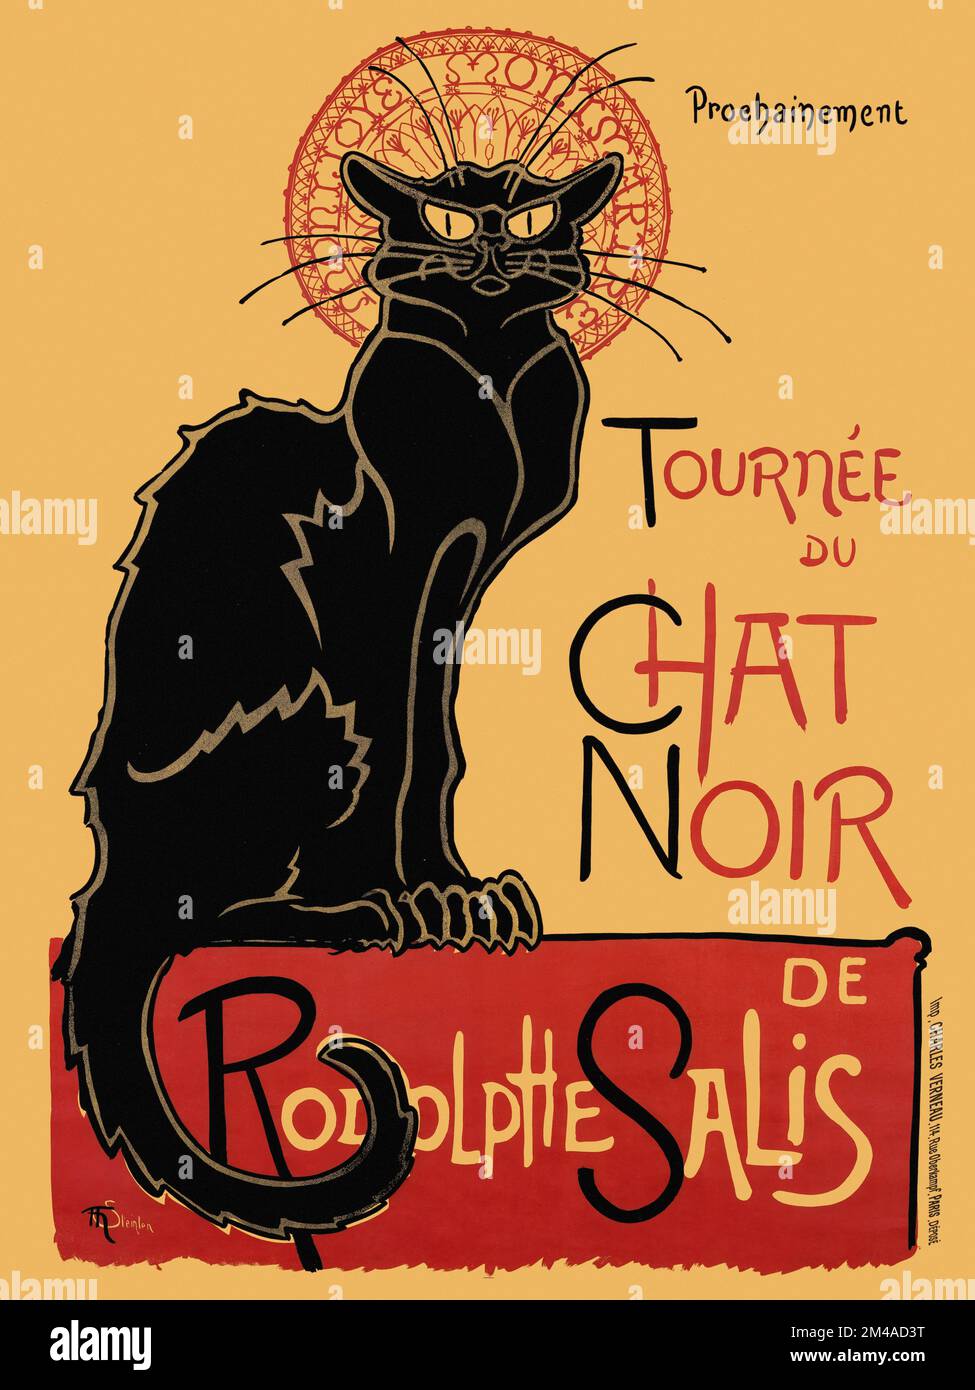 Prochainement, tournée du Chat Noir de Rodolphe Salis par Théophile Alexandre Steinlen (1859-1923). Affiche publiée en 1896 en France. Banque D'Images